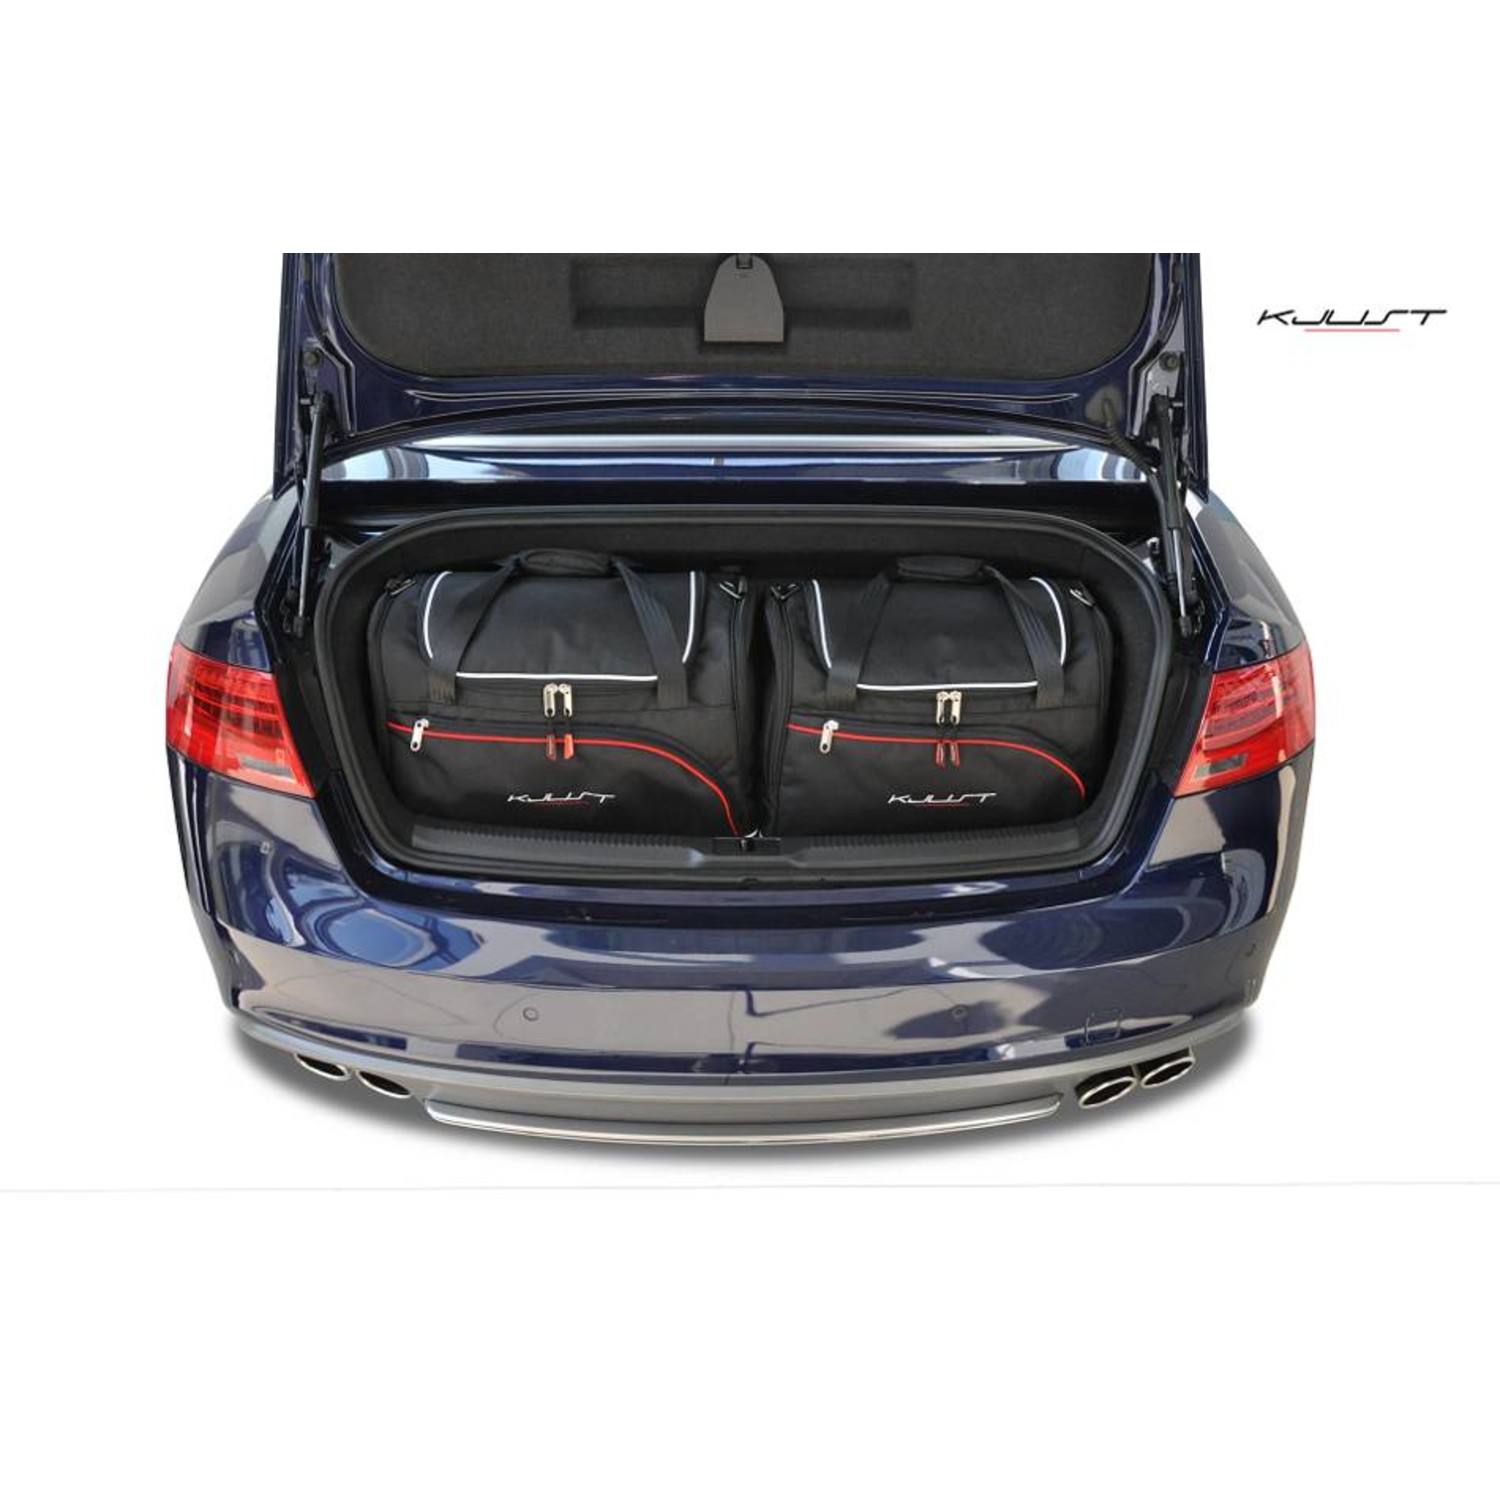 Maßgefertigtes Reisetaschen Set für Audi A5 Cabrio - Maluch Premium  Autozubehör